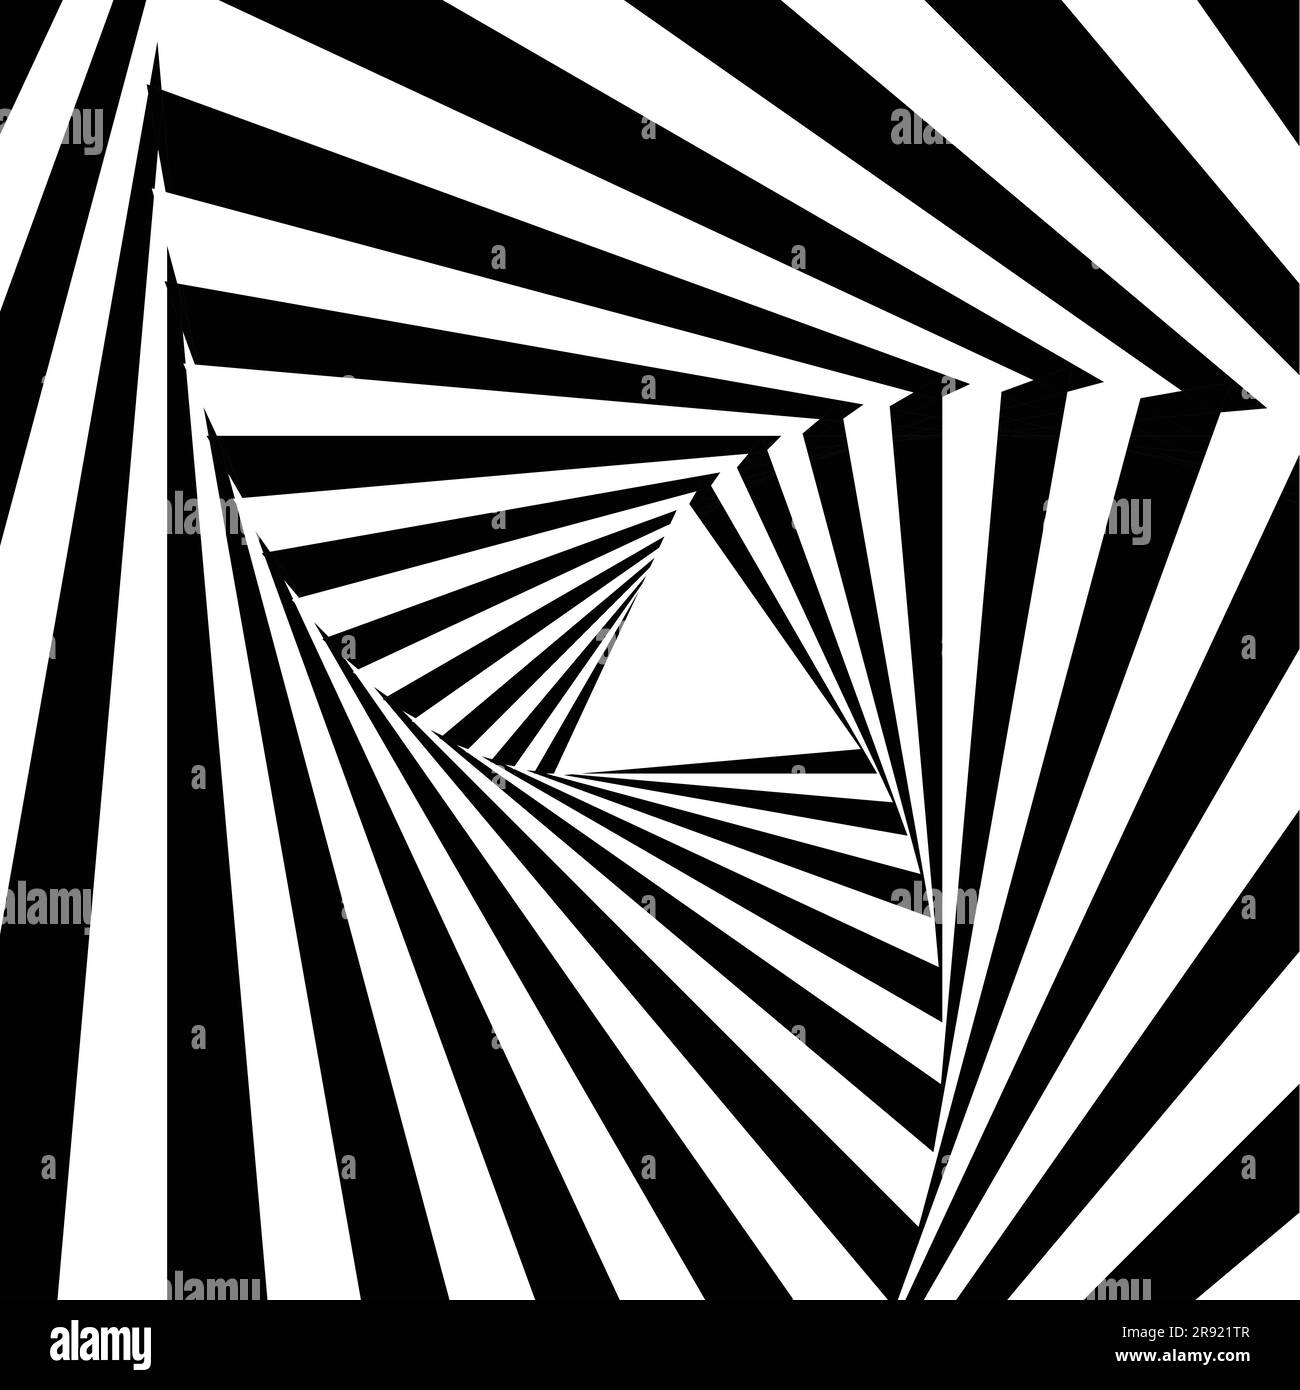 Hintergrund mit abstrakten geometrischen Mustern mit schwarzen und weißen Linien und Dreiecksformen Stock Vektor